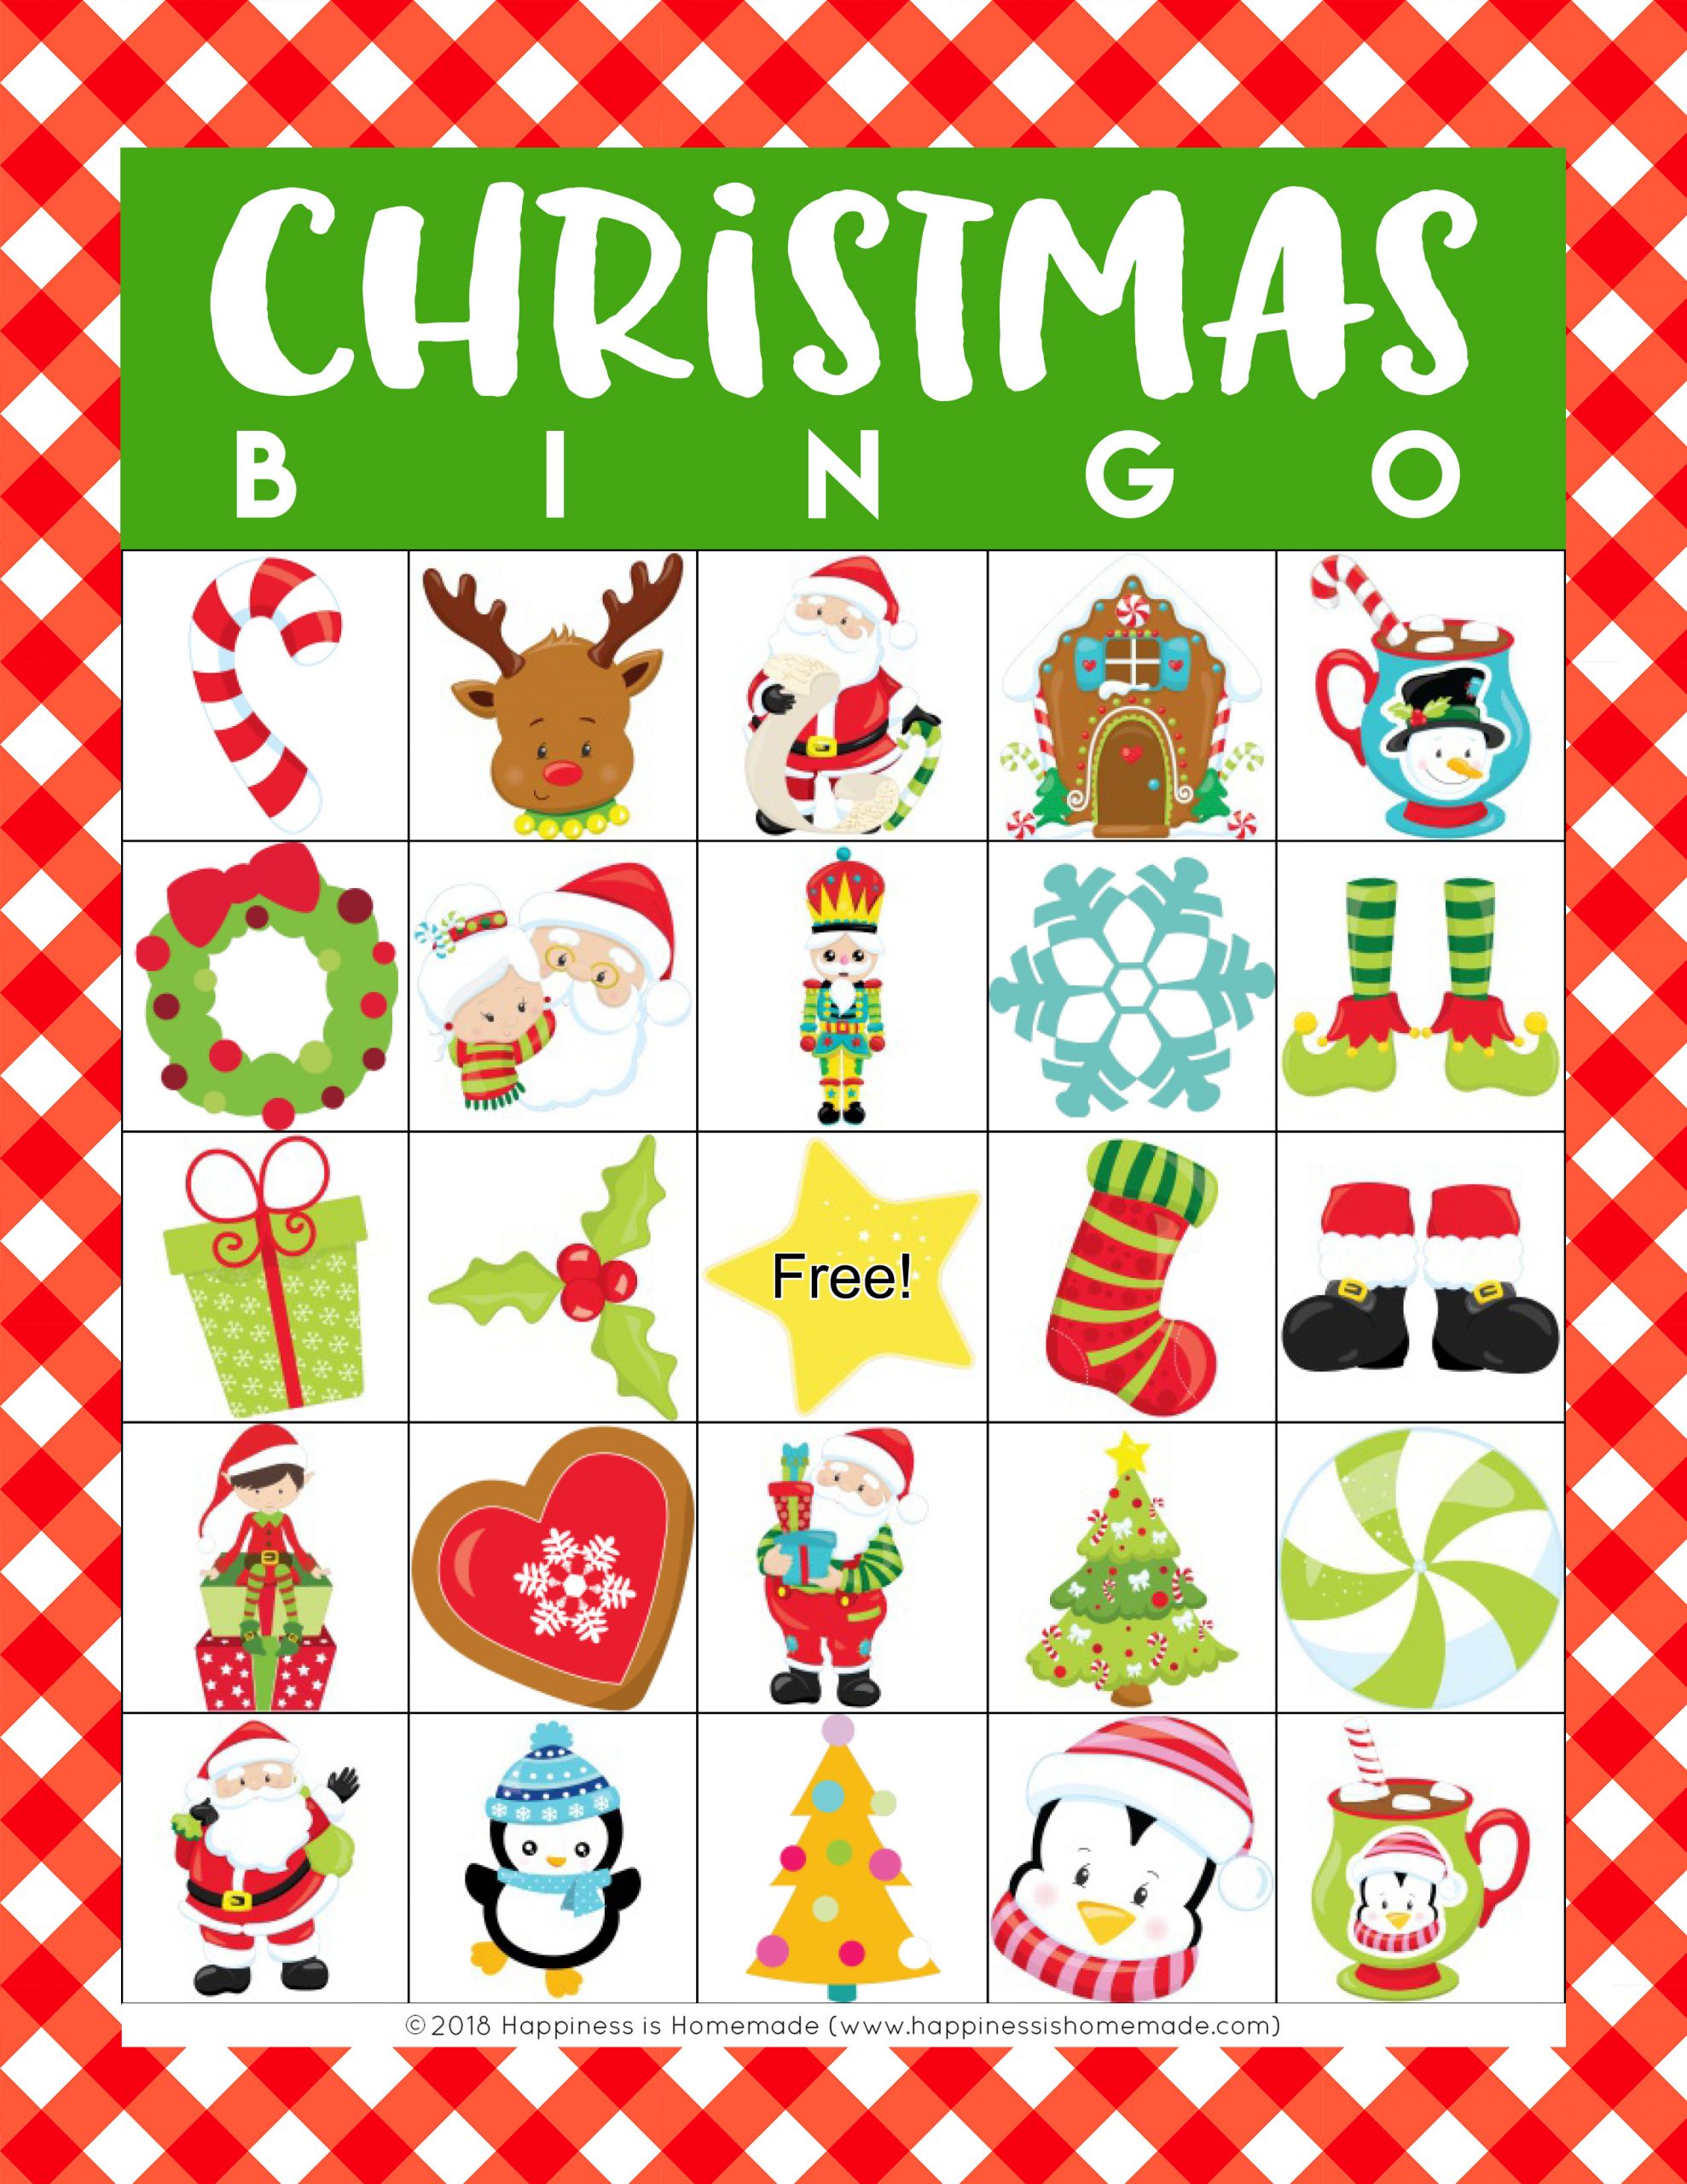 Free Printable Christmas Games For Large Groups Printable Templates